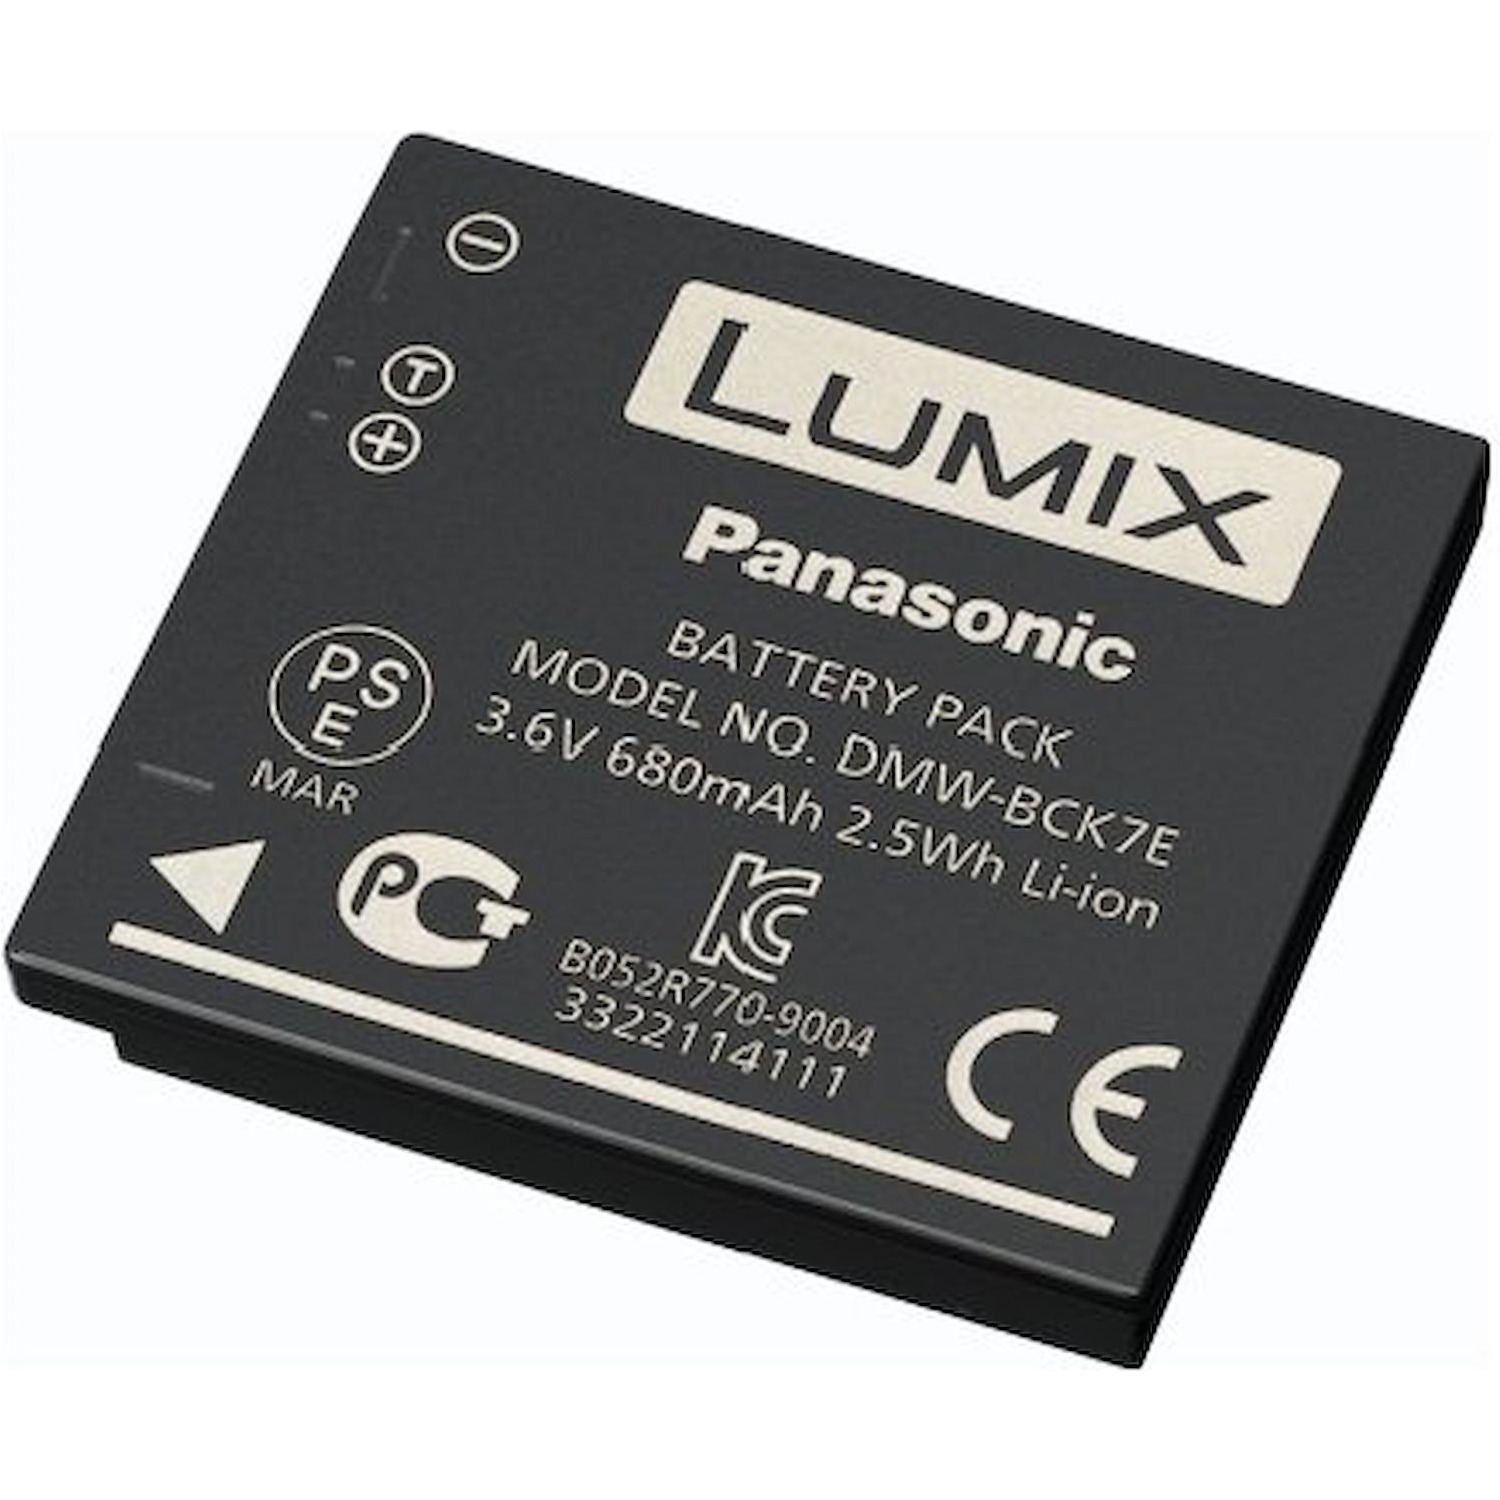 Immagine per Batteria Panasonic per FT30 DMW-BCK7E             Batteria al litio ricaricaricabile per le da DIMOStore